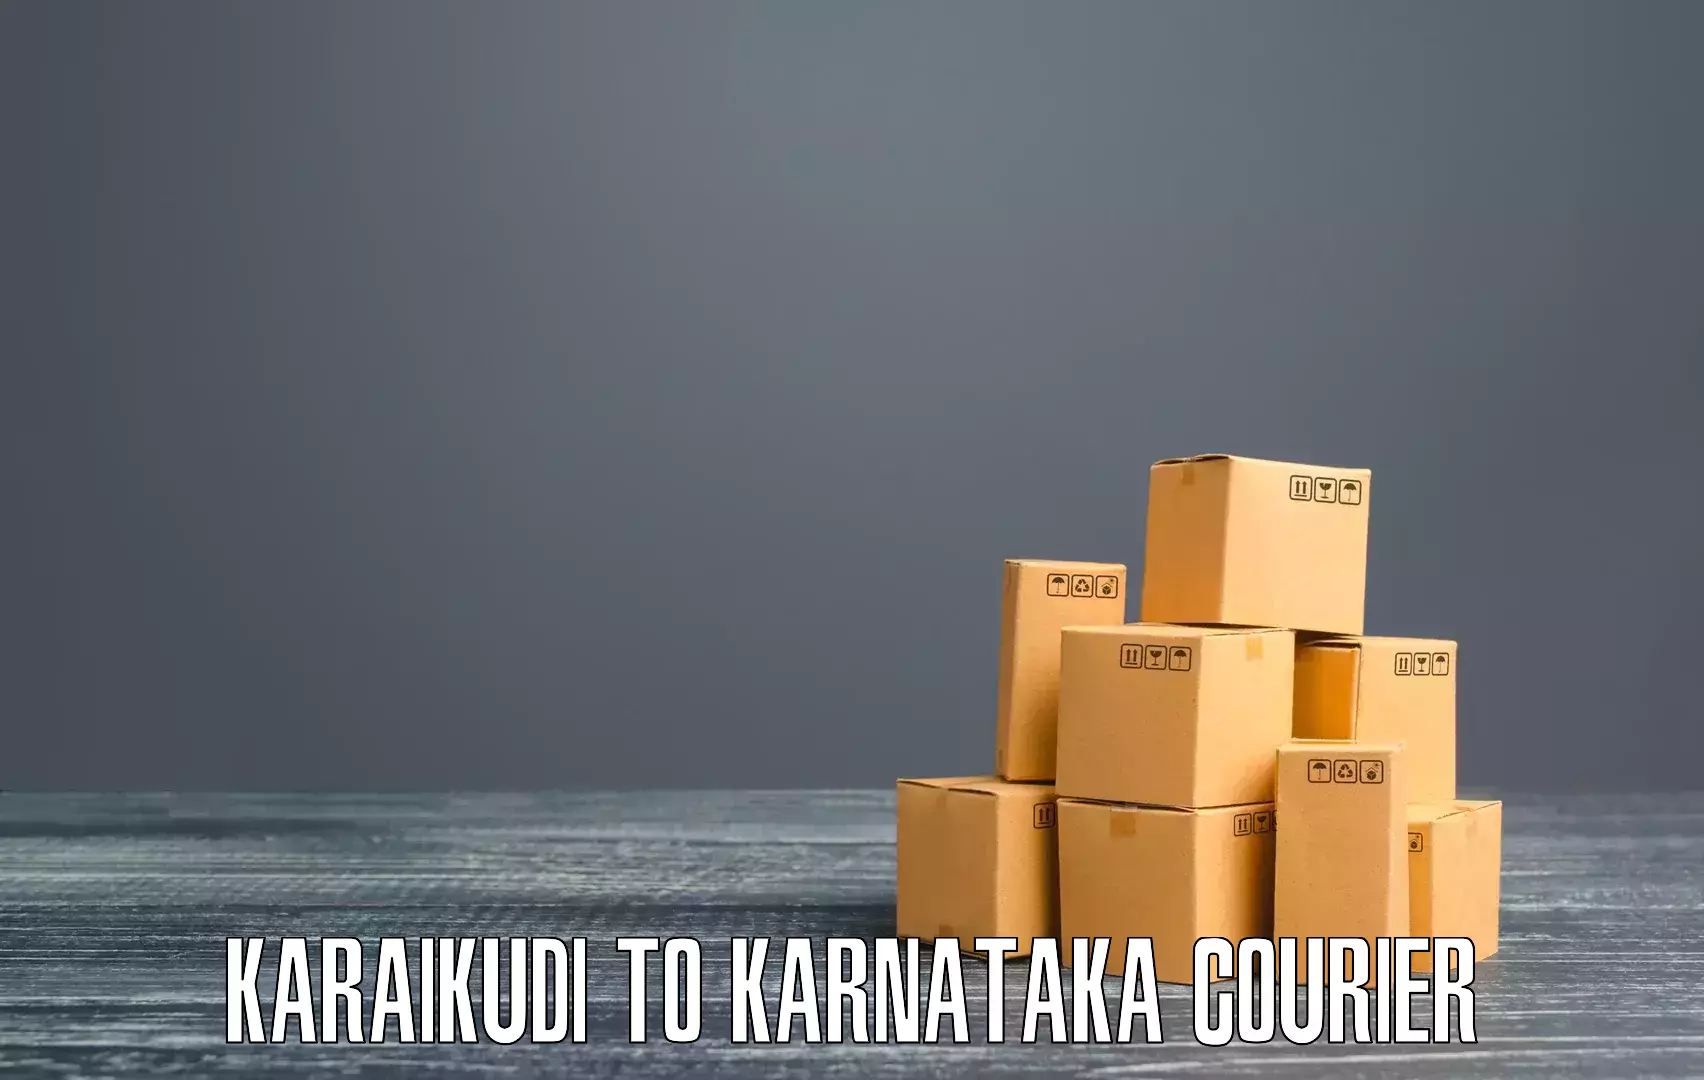 Express delivery network Karaikudi to Karnataka